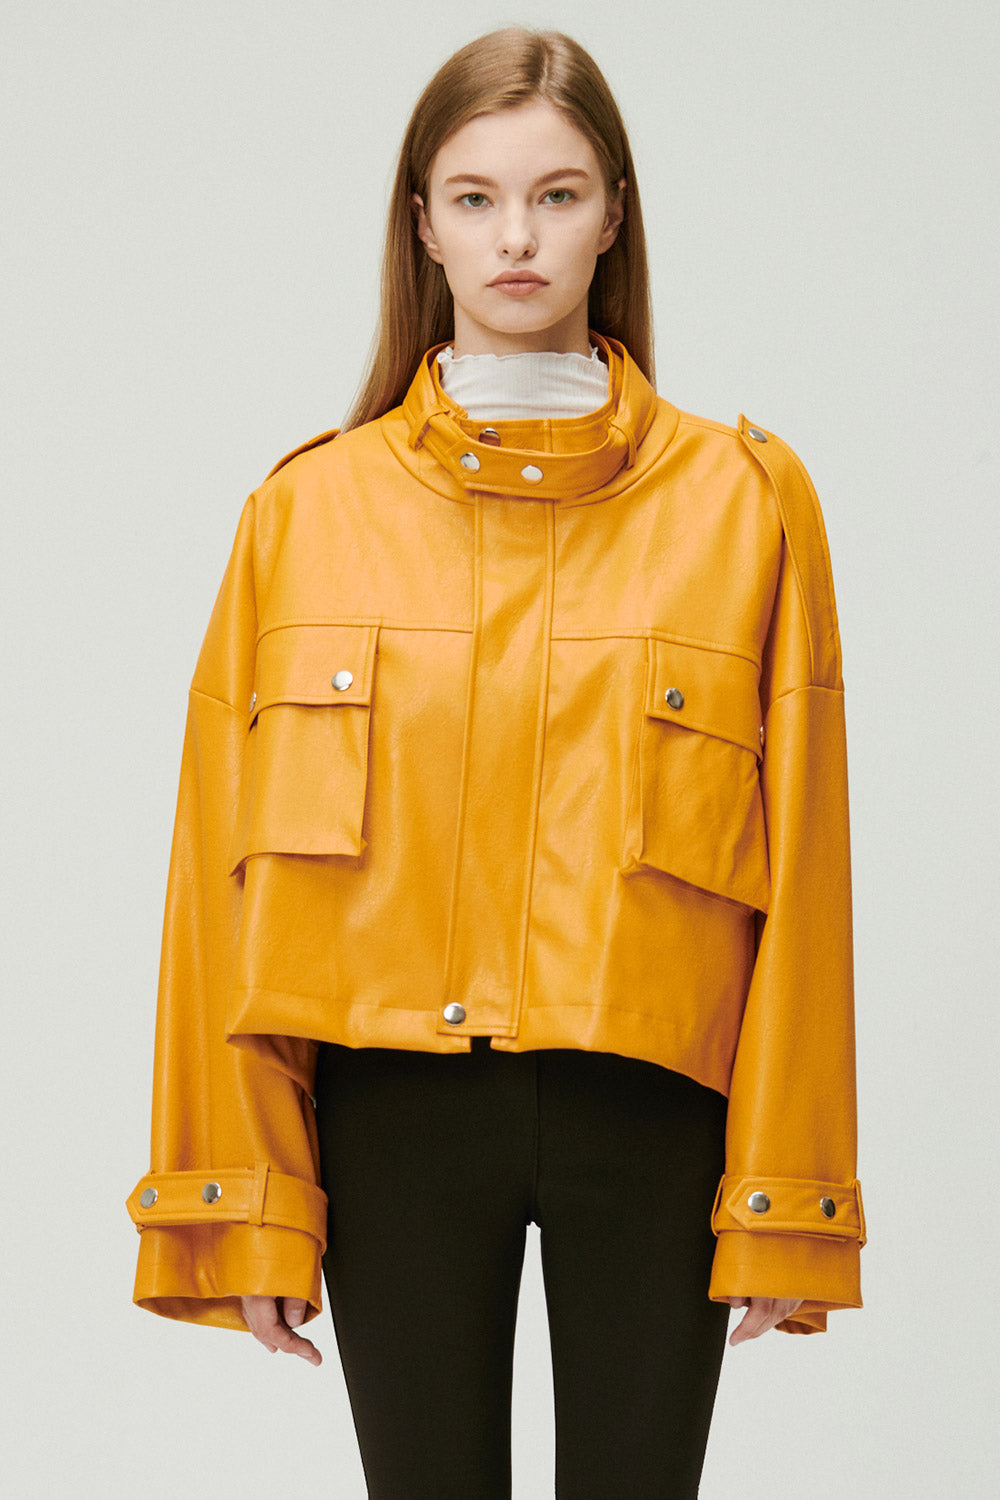 storets.com Naomi Oversized Pleather Jacket